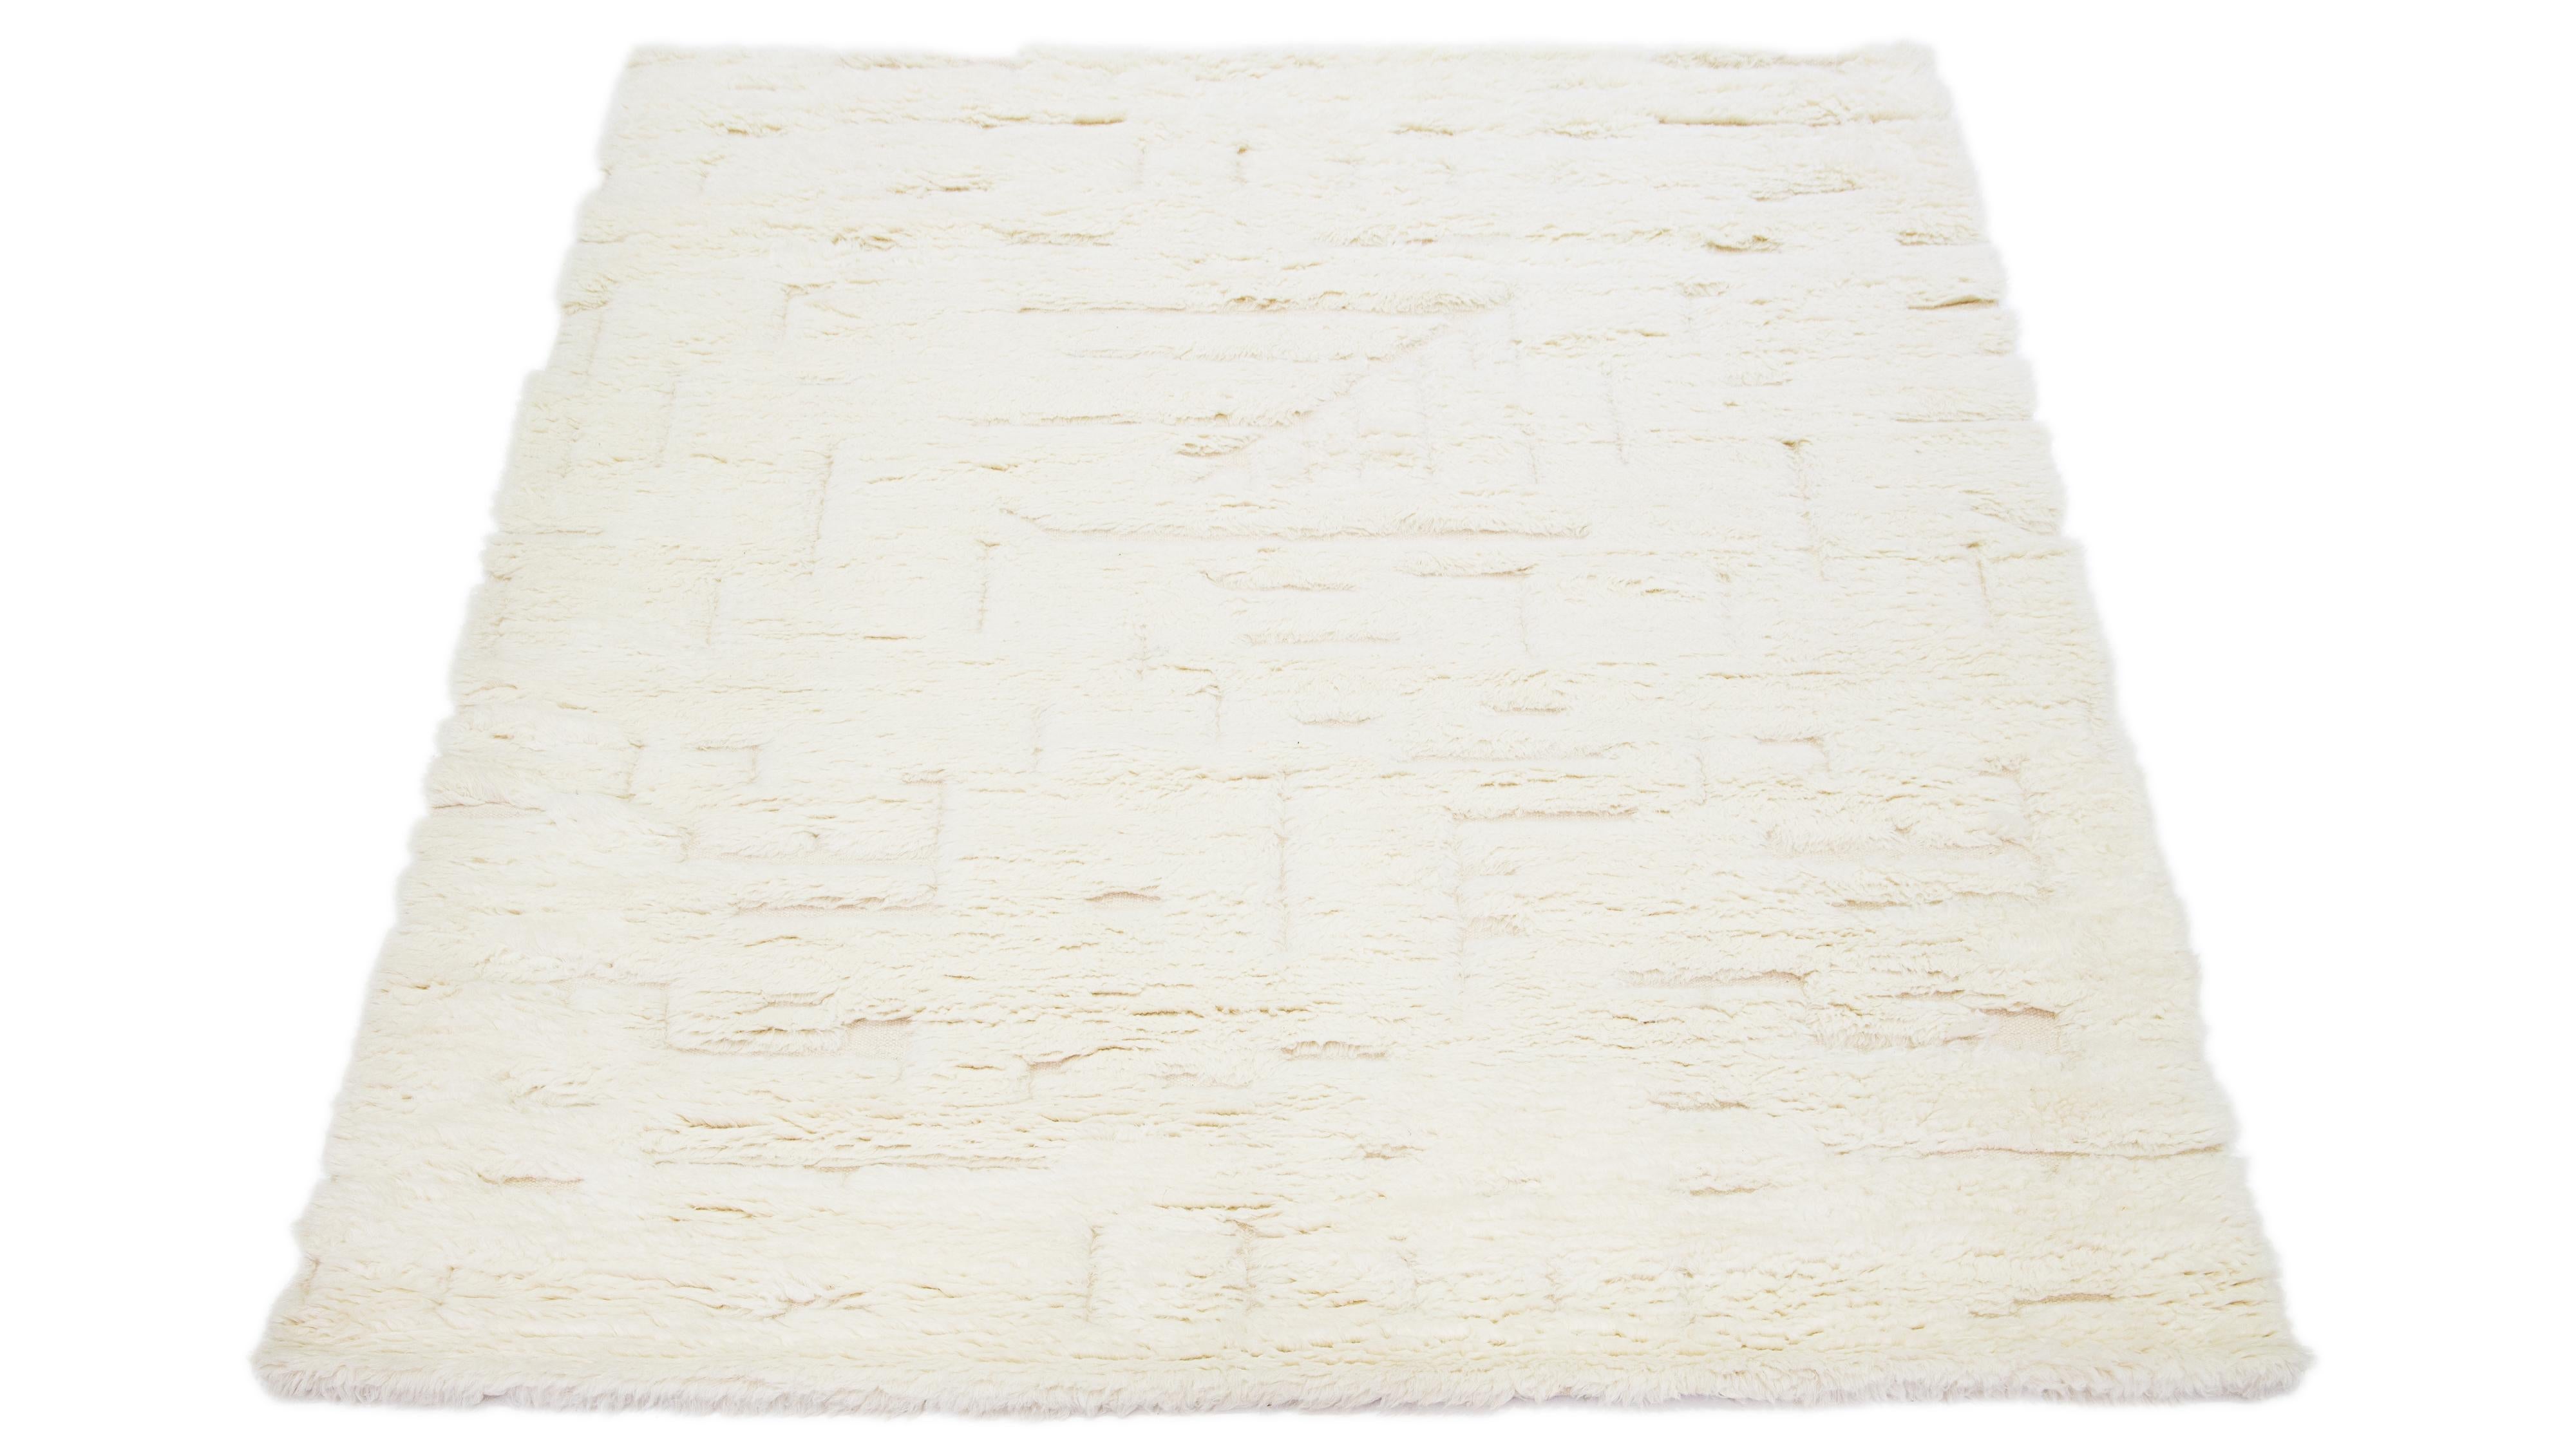 Schöner moderner, handgeknüpfter Wollteppich im marokkanischen Stil mit elfenbeinfarbenem Feld. Dieser Teppich gehört zur Safi Collection'S von Apadana und zeichnet sich durch ein geometrisches Muster aus.

Dieser Teppich misst 8' x 10'

Unsere